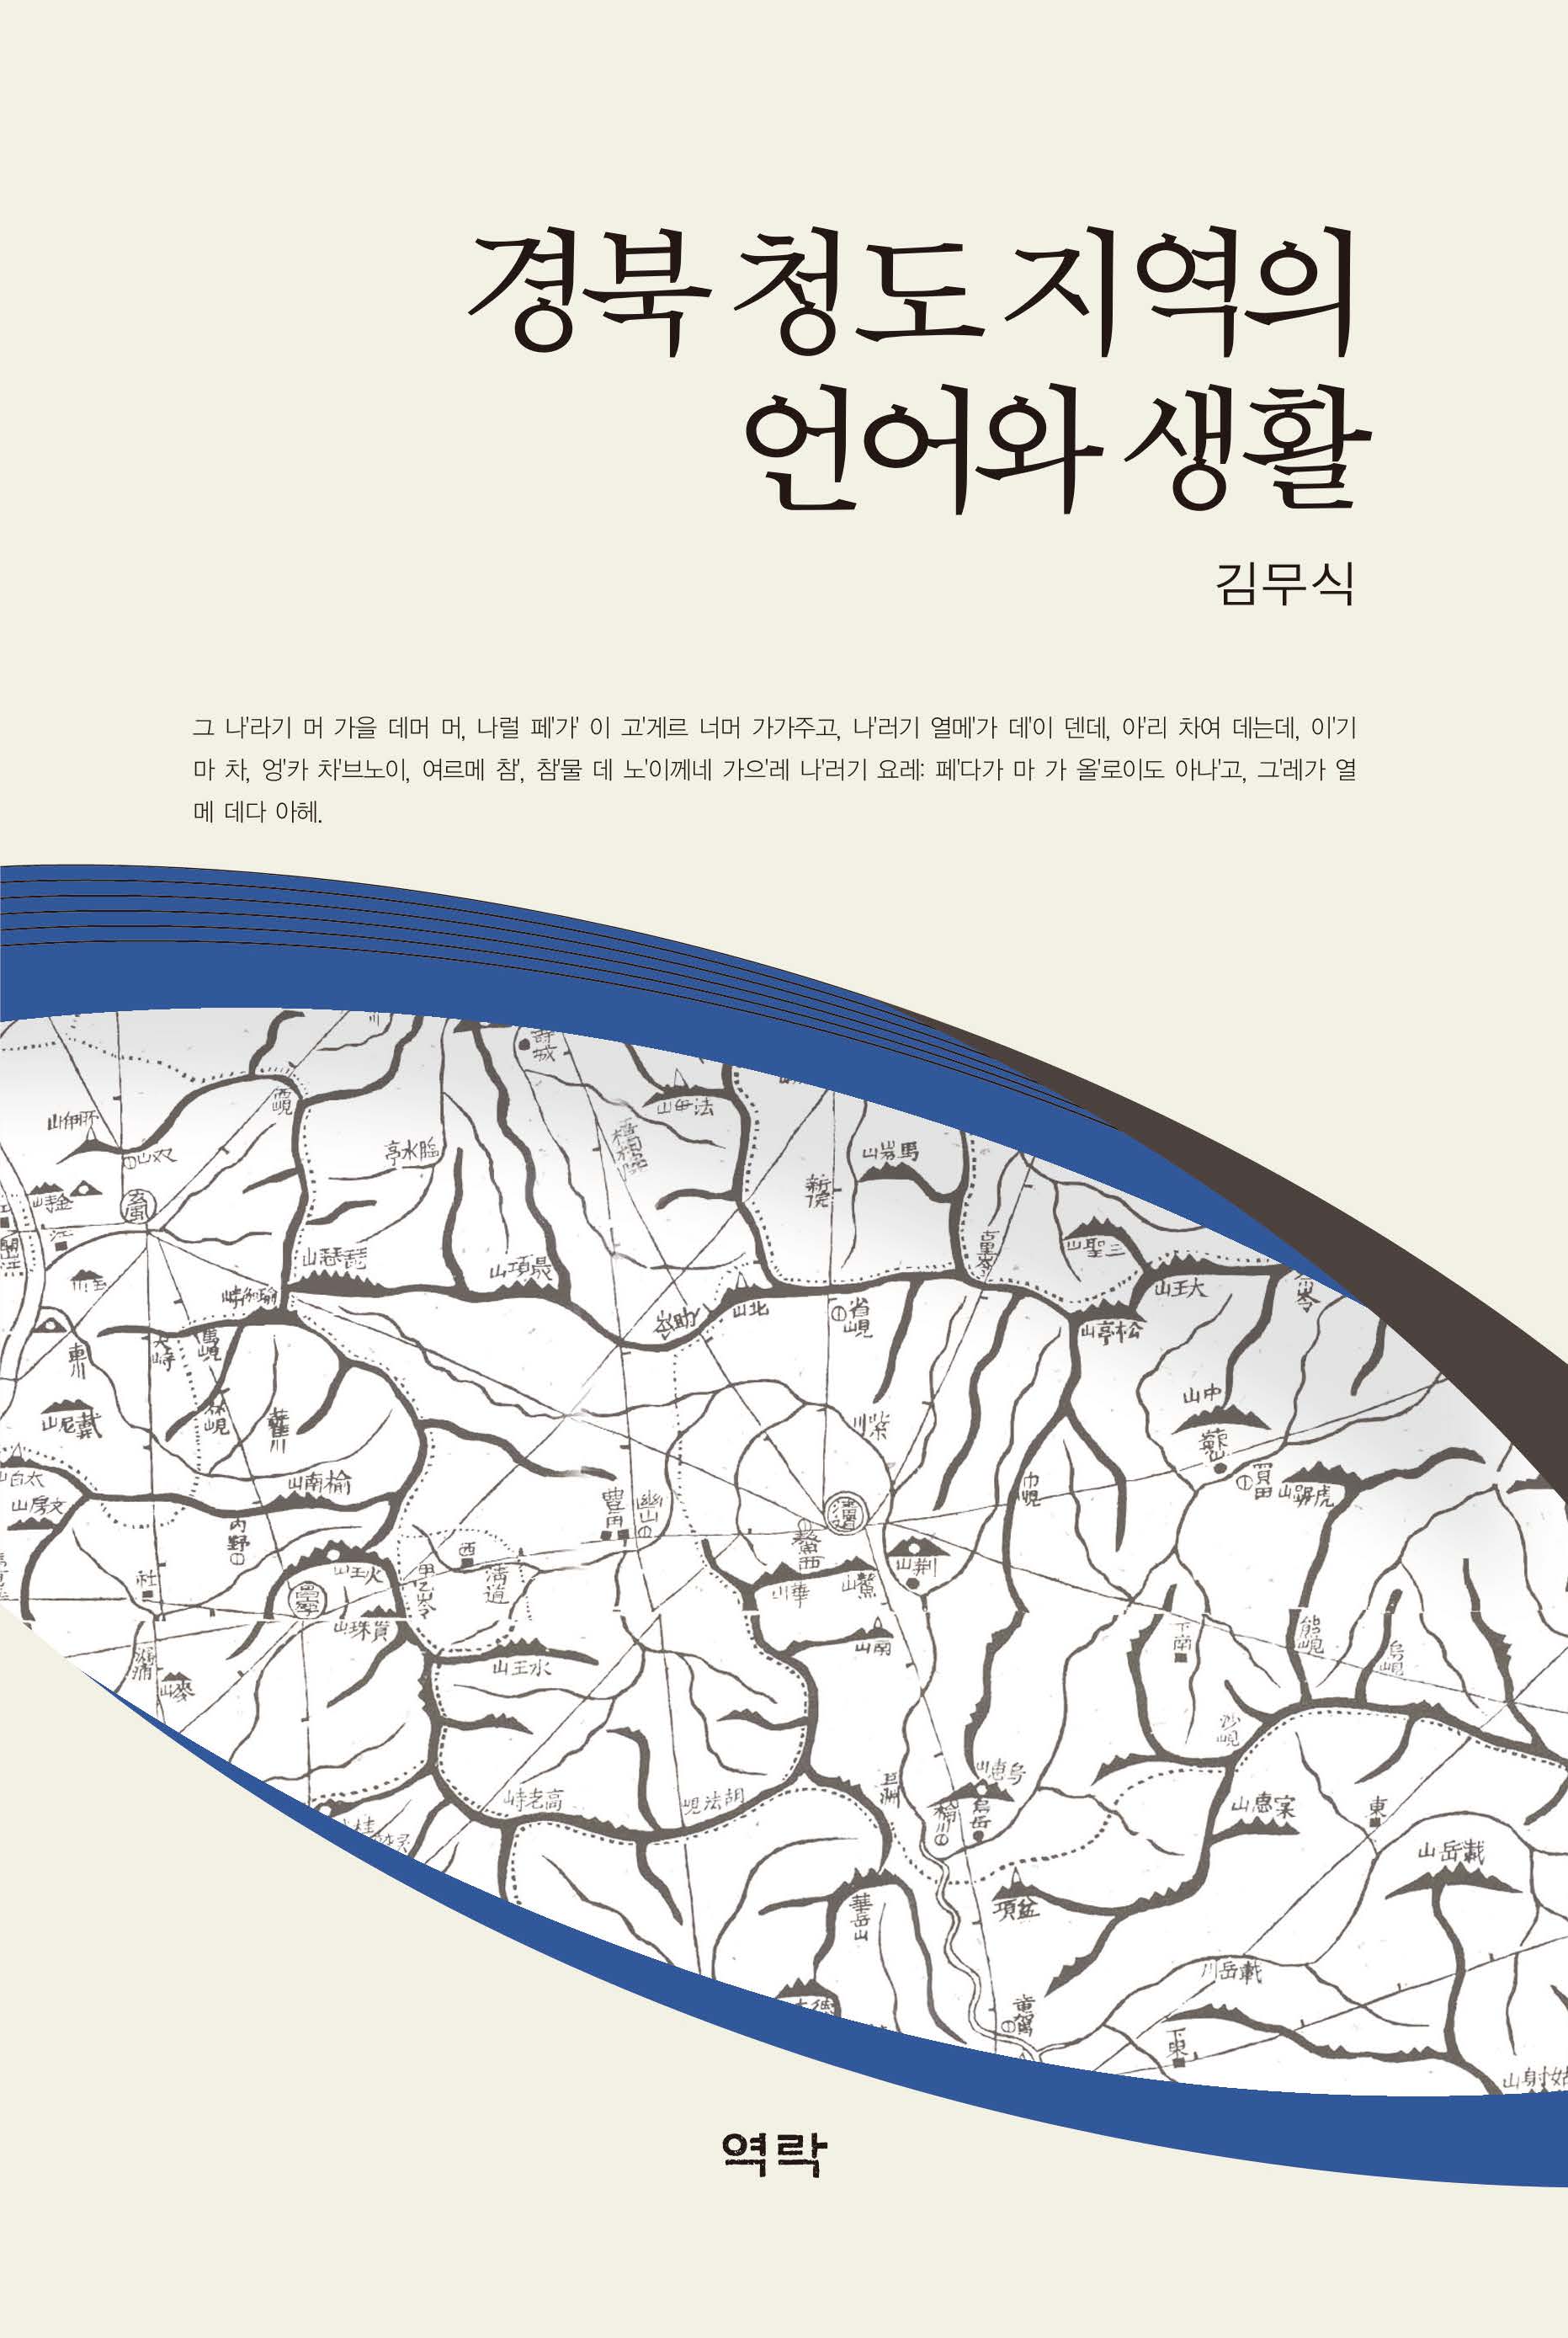 경북 청도지역의 언어와 생활